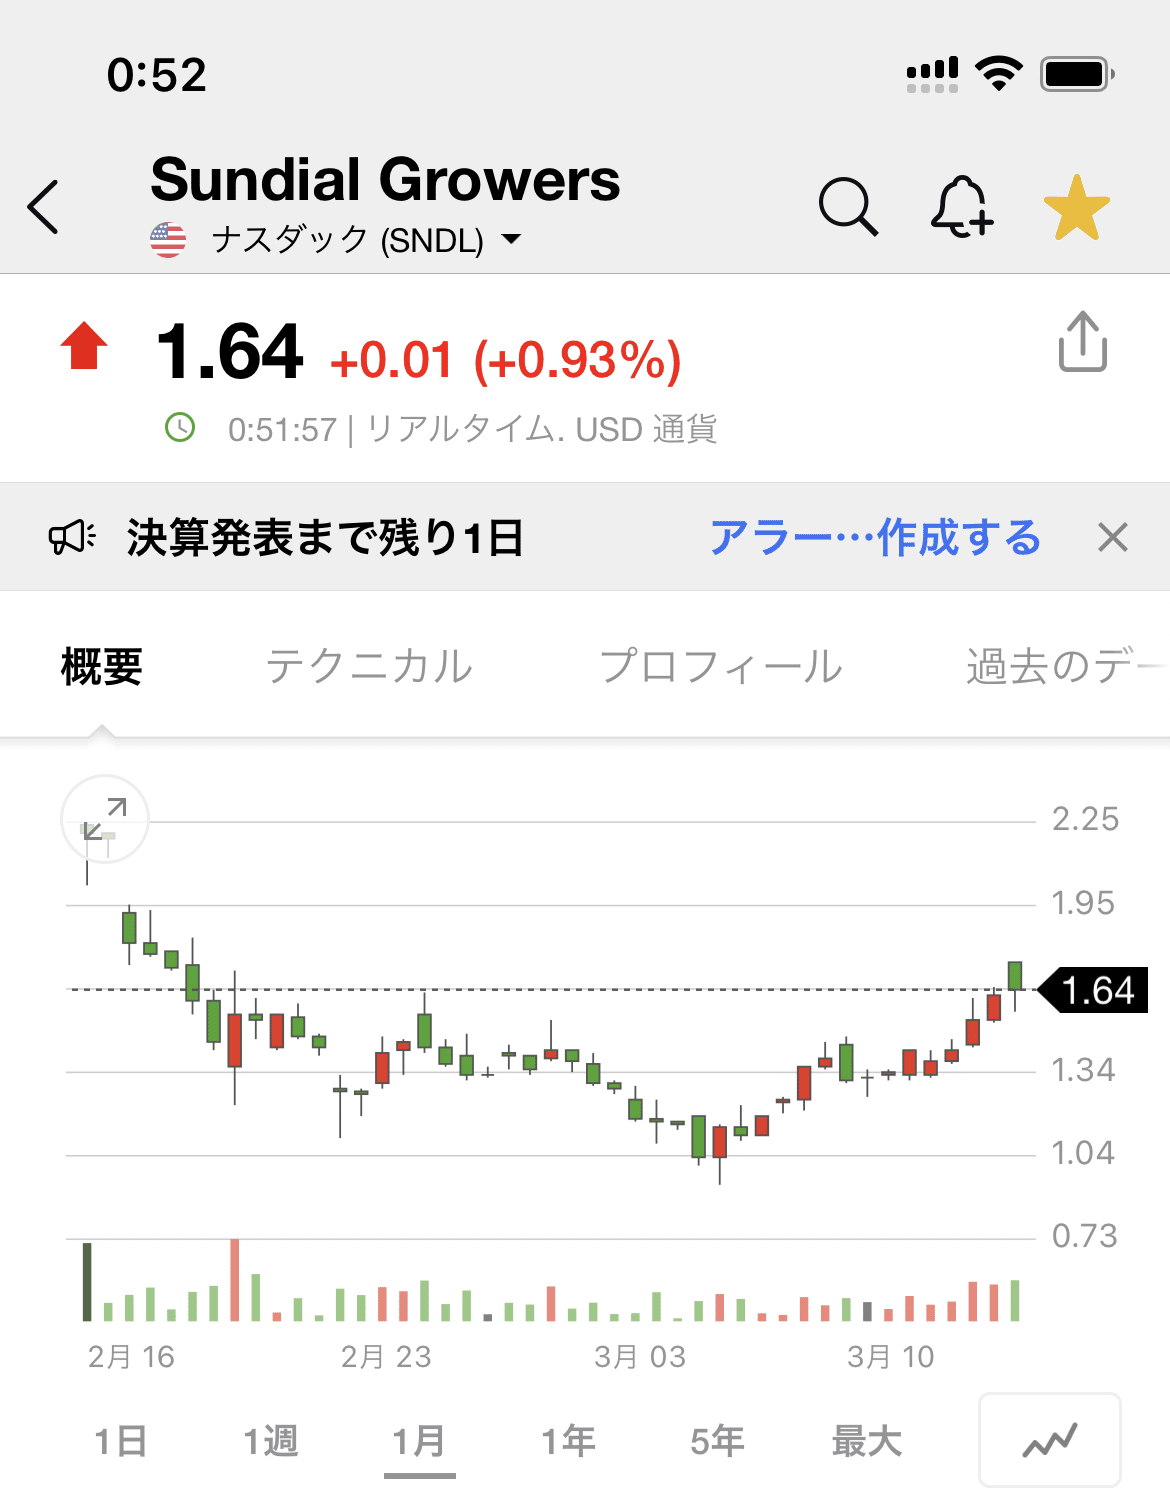 Sndl 株価